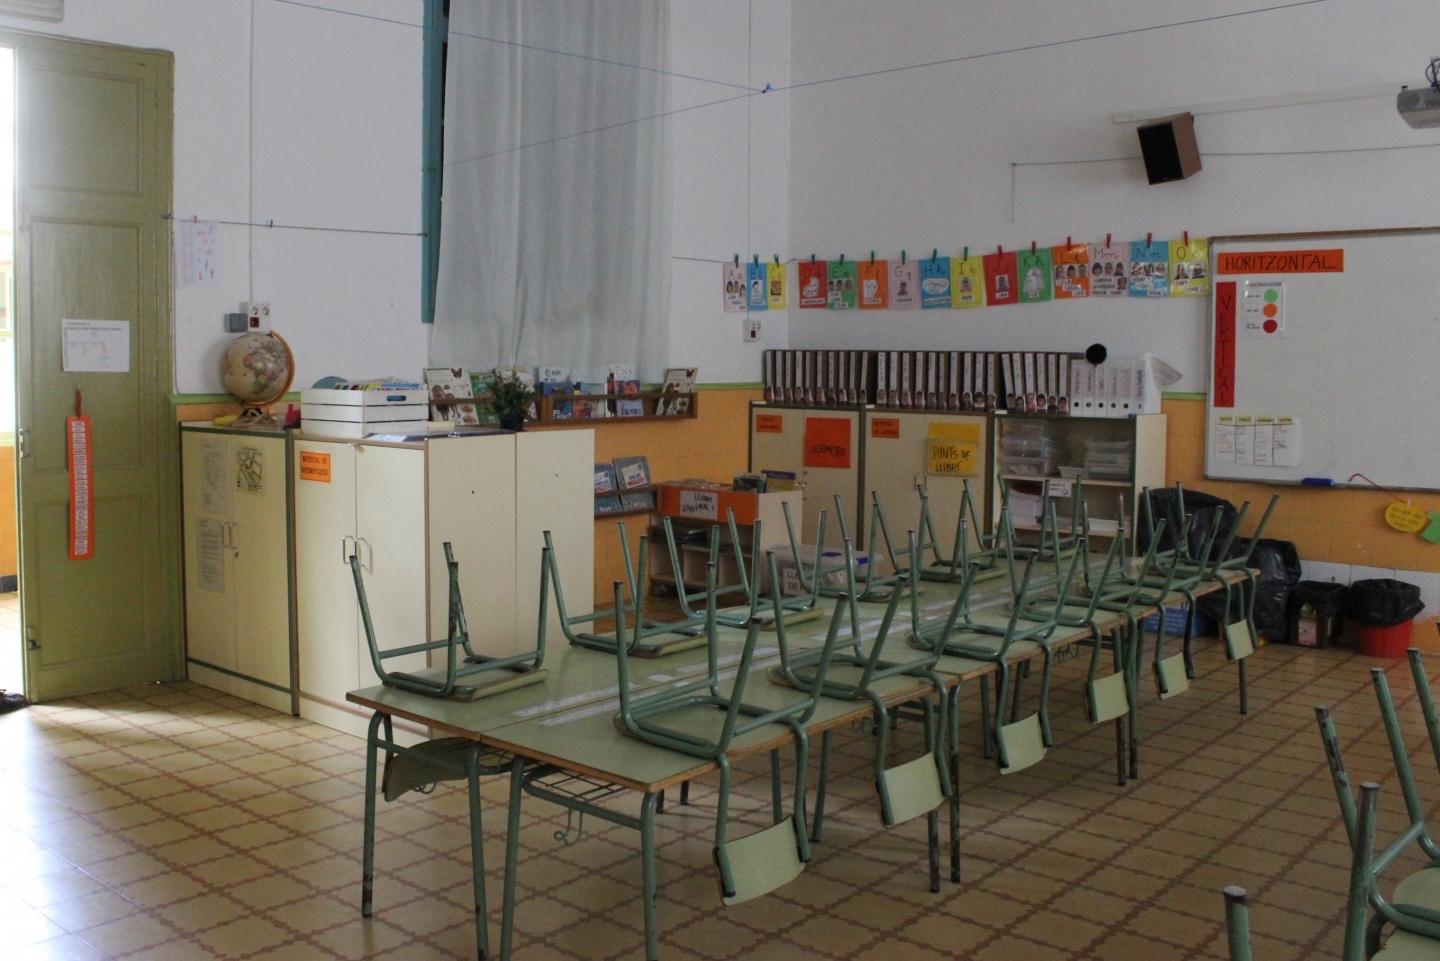 Una aula buida de l'escola Emili Carles-Tolrà. Arxiu_1440x961